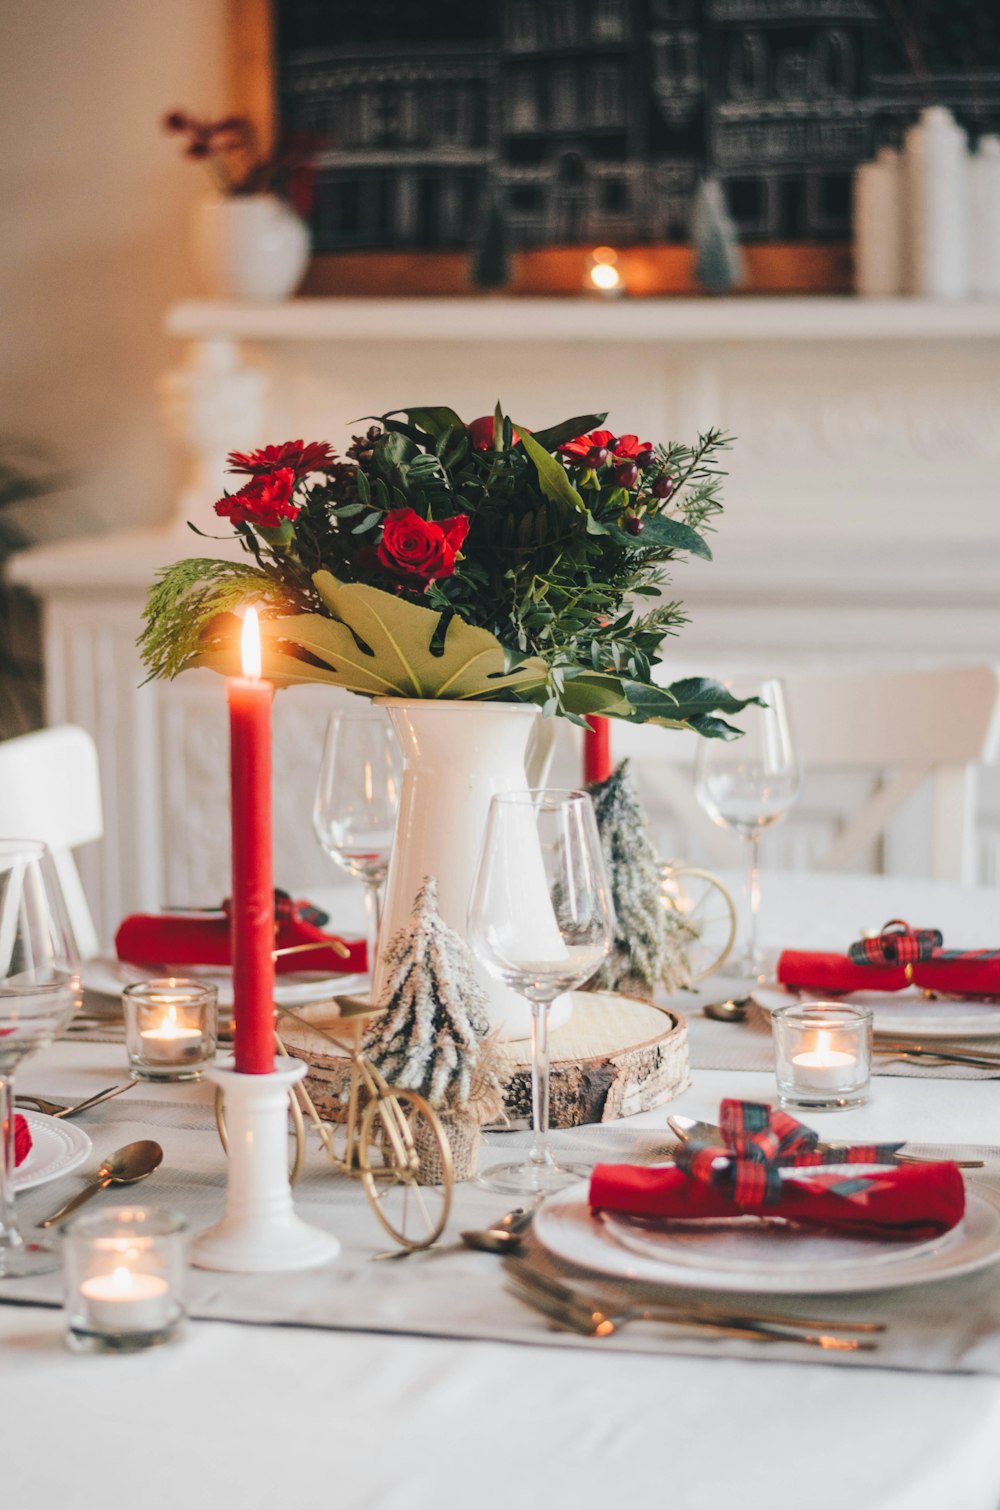 Rose rosse e bianche in vaso di ceramica bianca sul tavolo